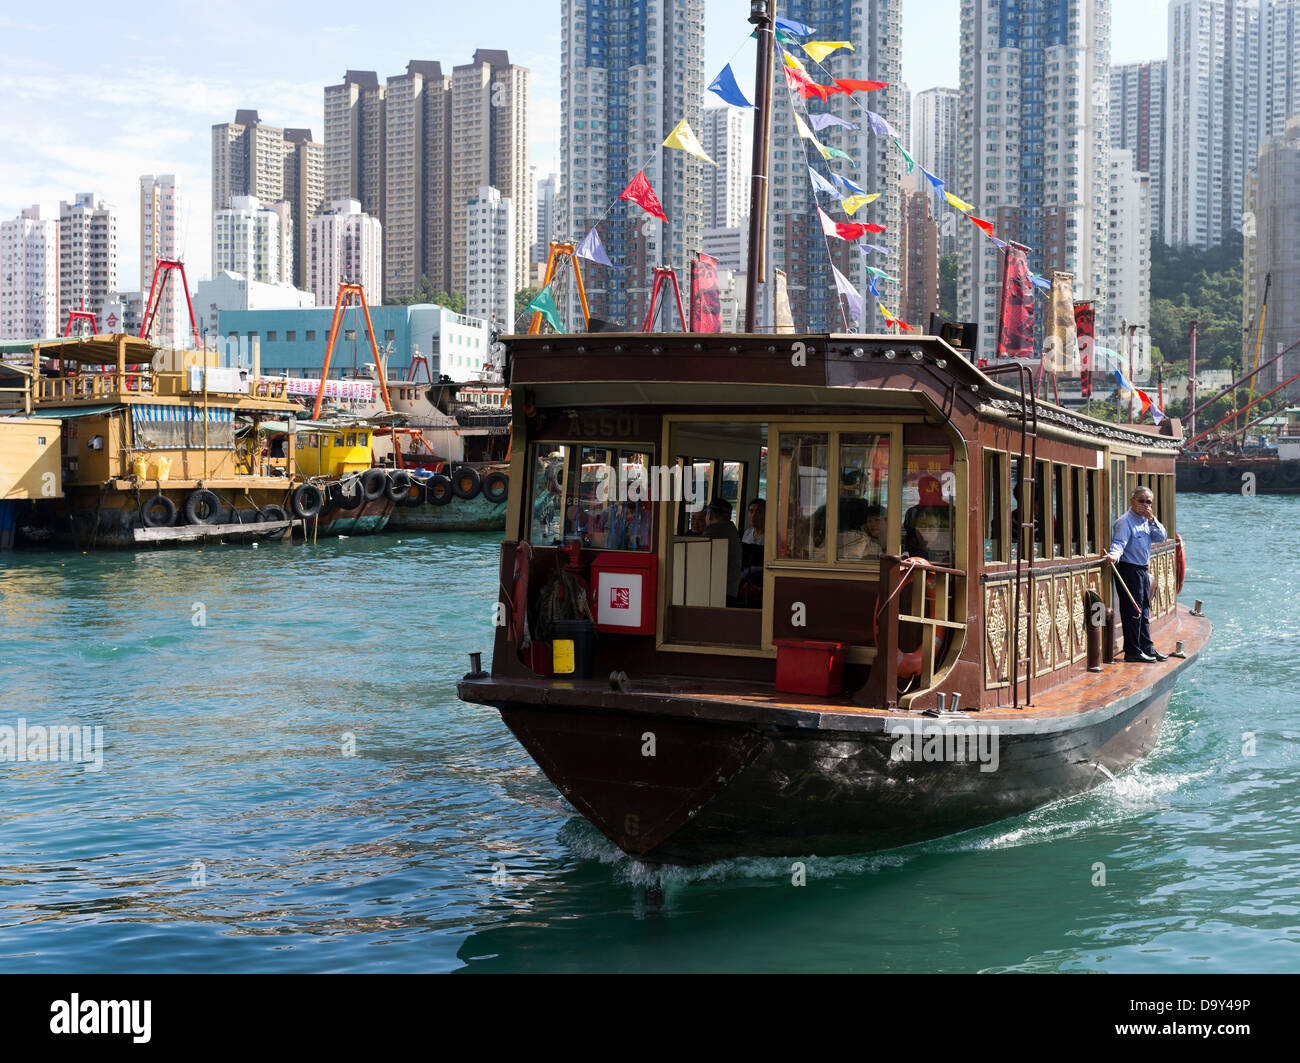 dh Aberdeen Harbour ABERDEEN HONG KONG Jumbo Restaurant ferry shuttle harbor Stock Photo